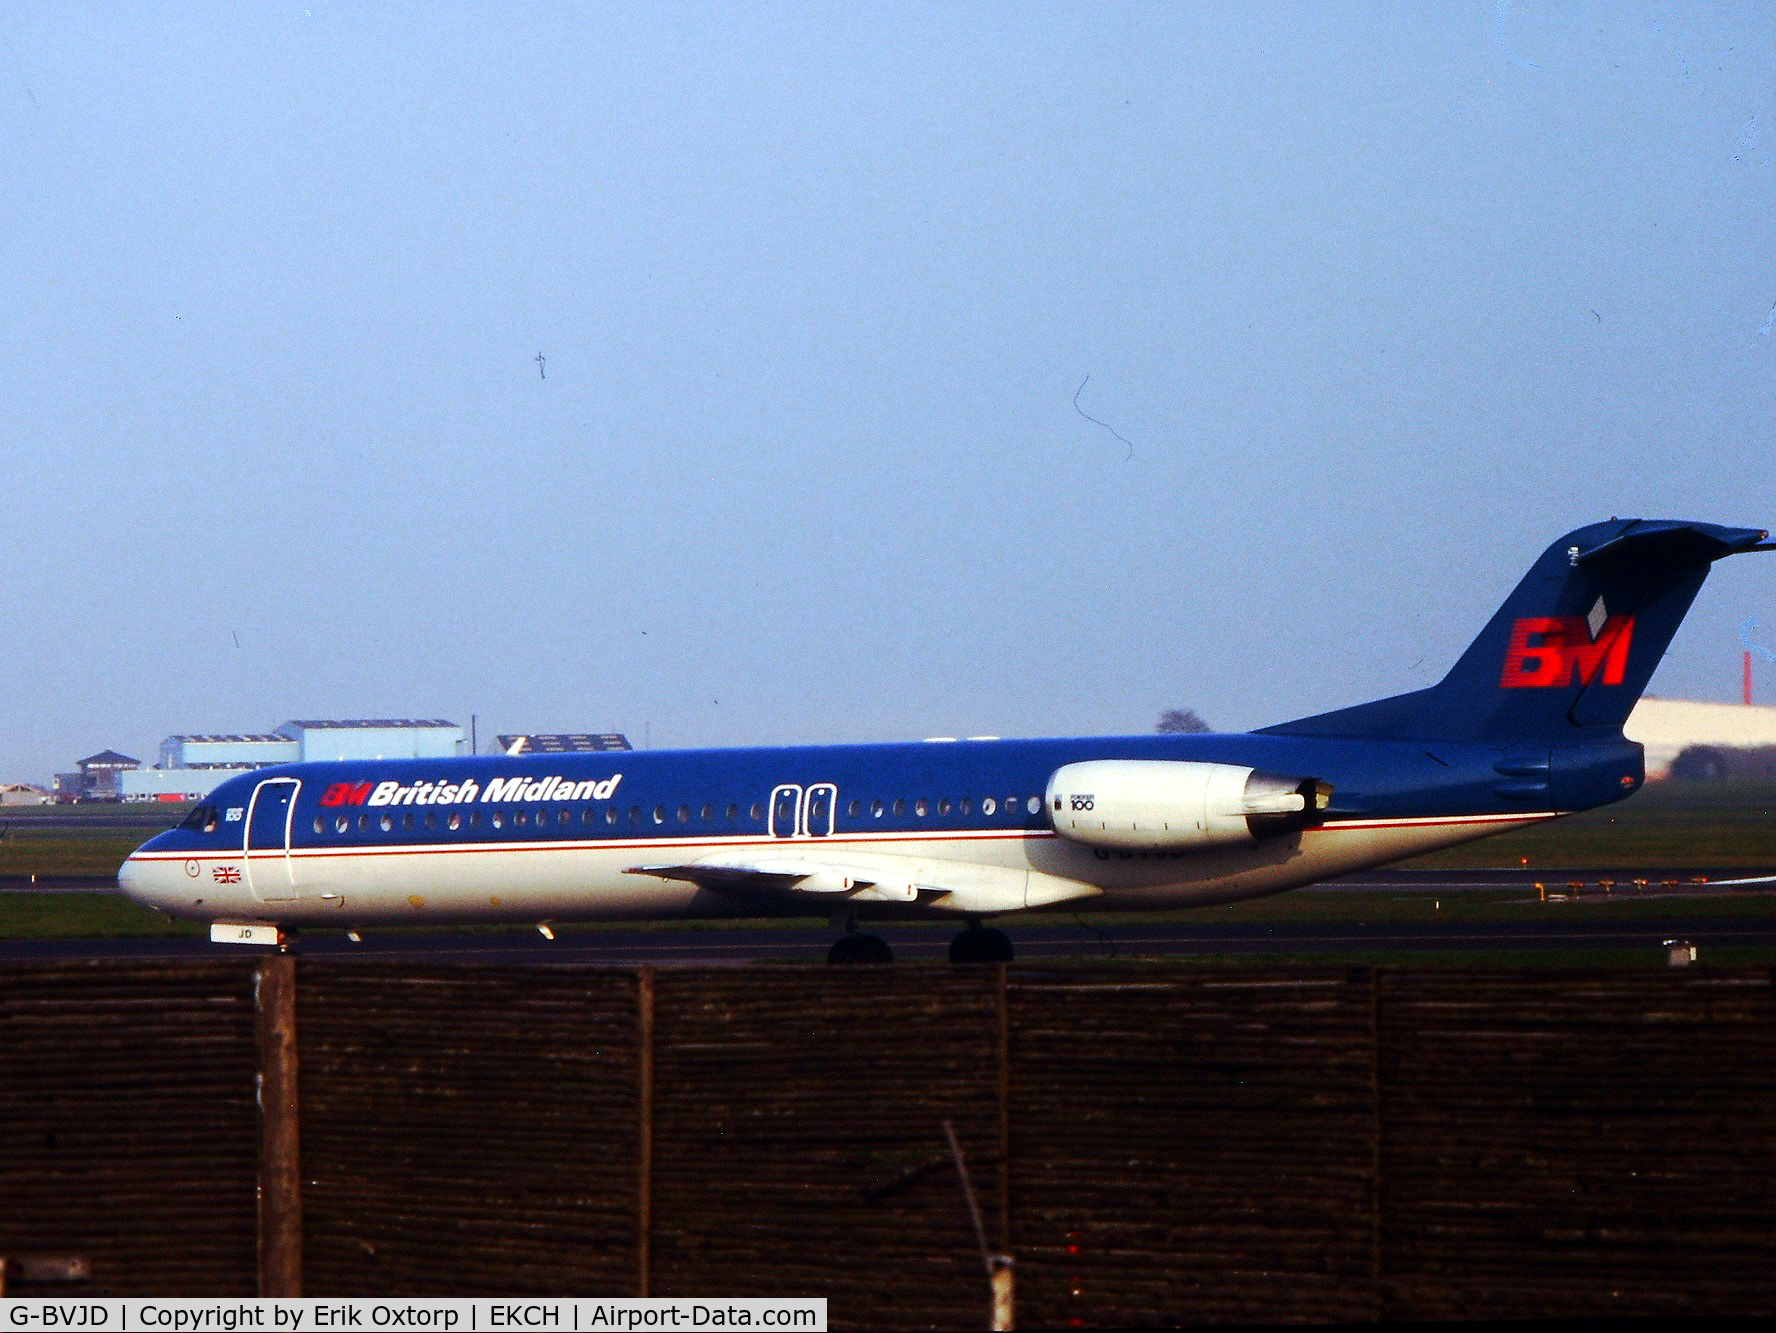 G-BVJD, 1994 Fokker 100 (F-28-0100) C/N 11503, G-BVJD landed rw 04L